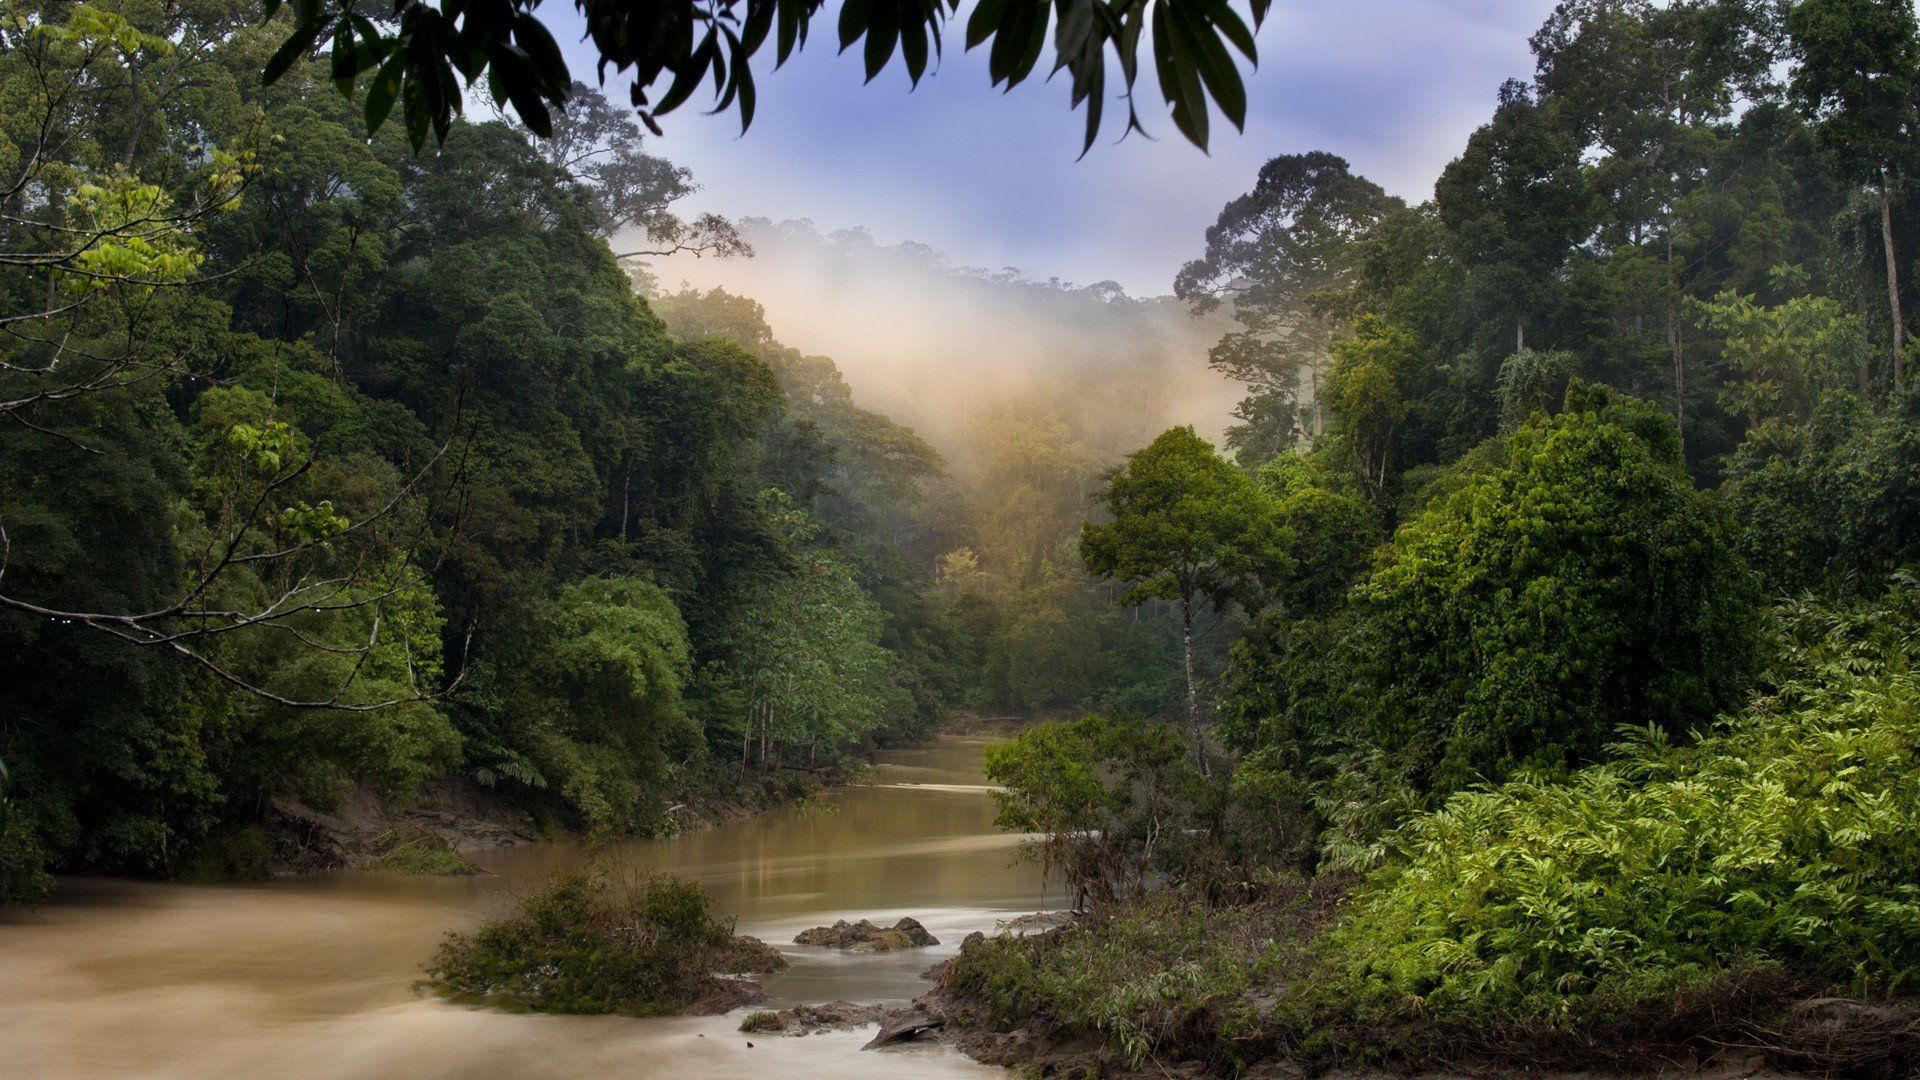 بک گراند هنری و دلپذیر طبیعت با طرح رودخانه در جنگل